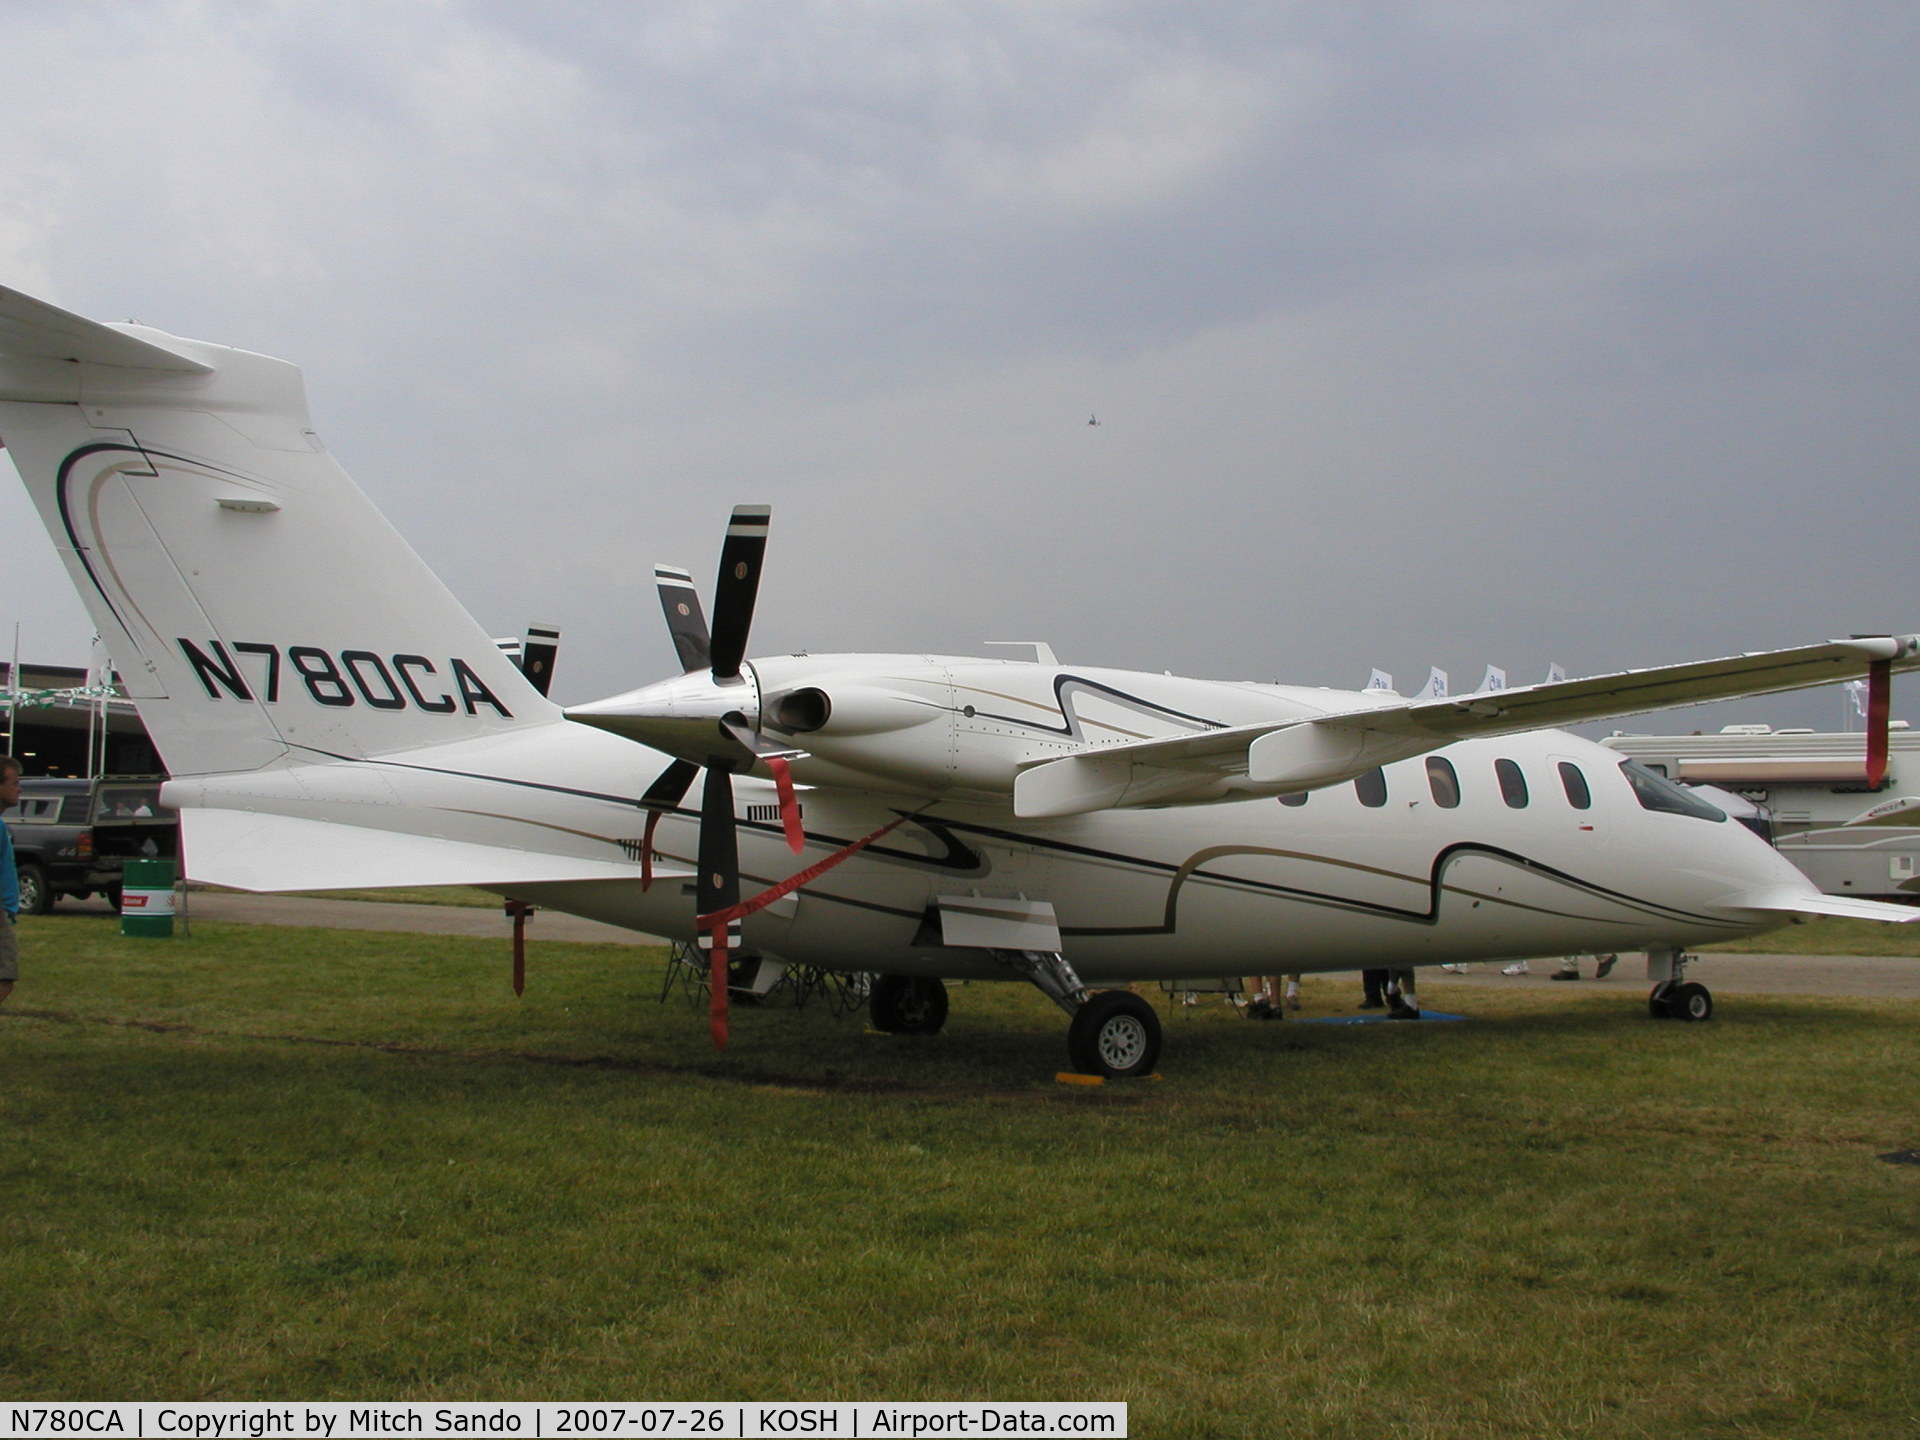 N780CA, 2005 Piaggio P-180 Avanti C/N 1106, EAA AirVenture 2007.